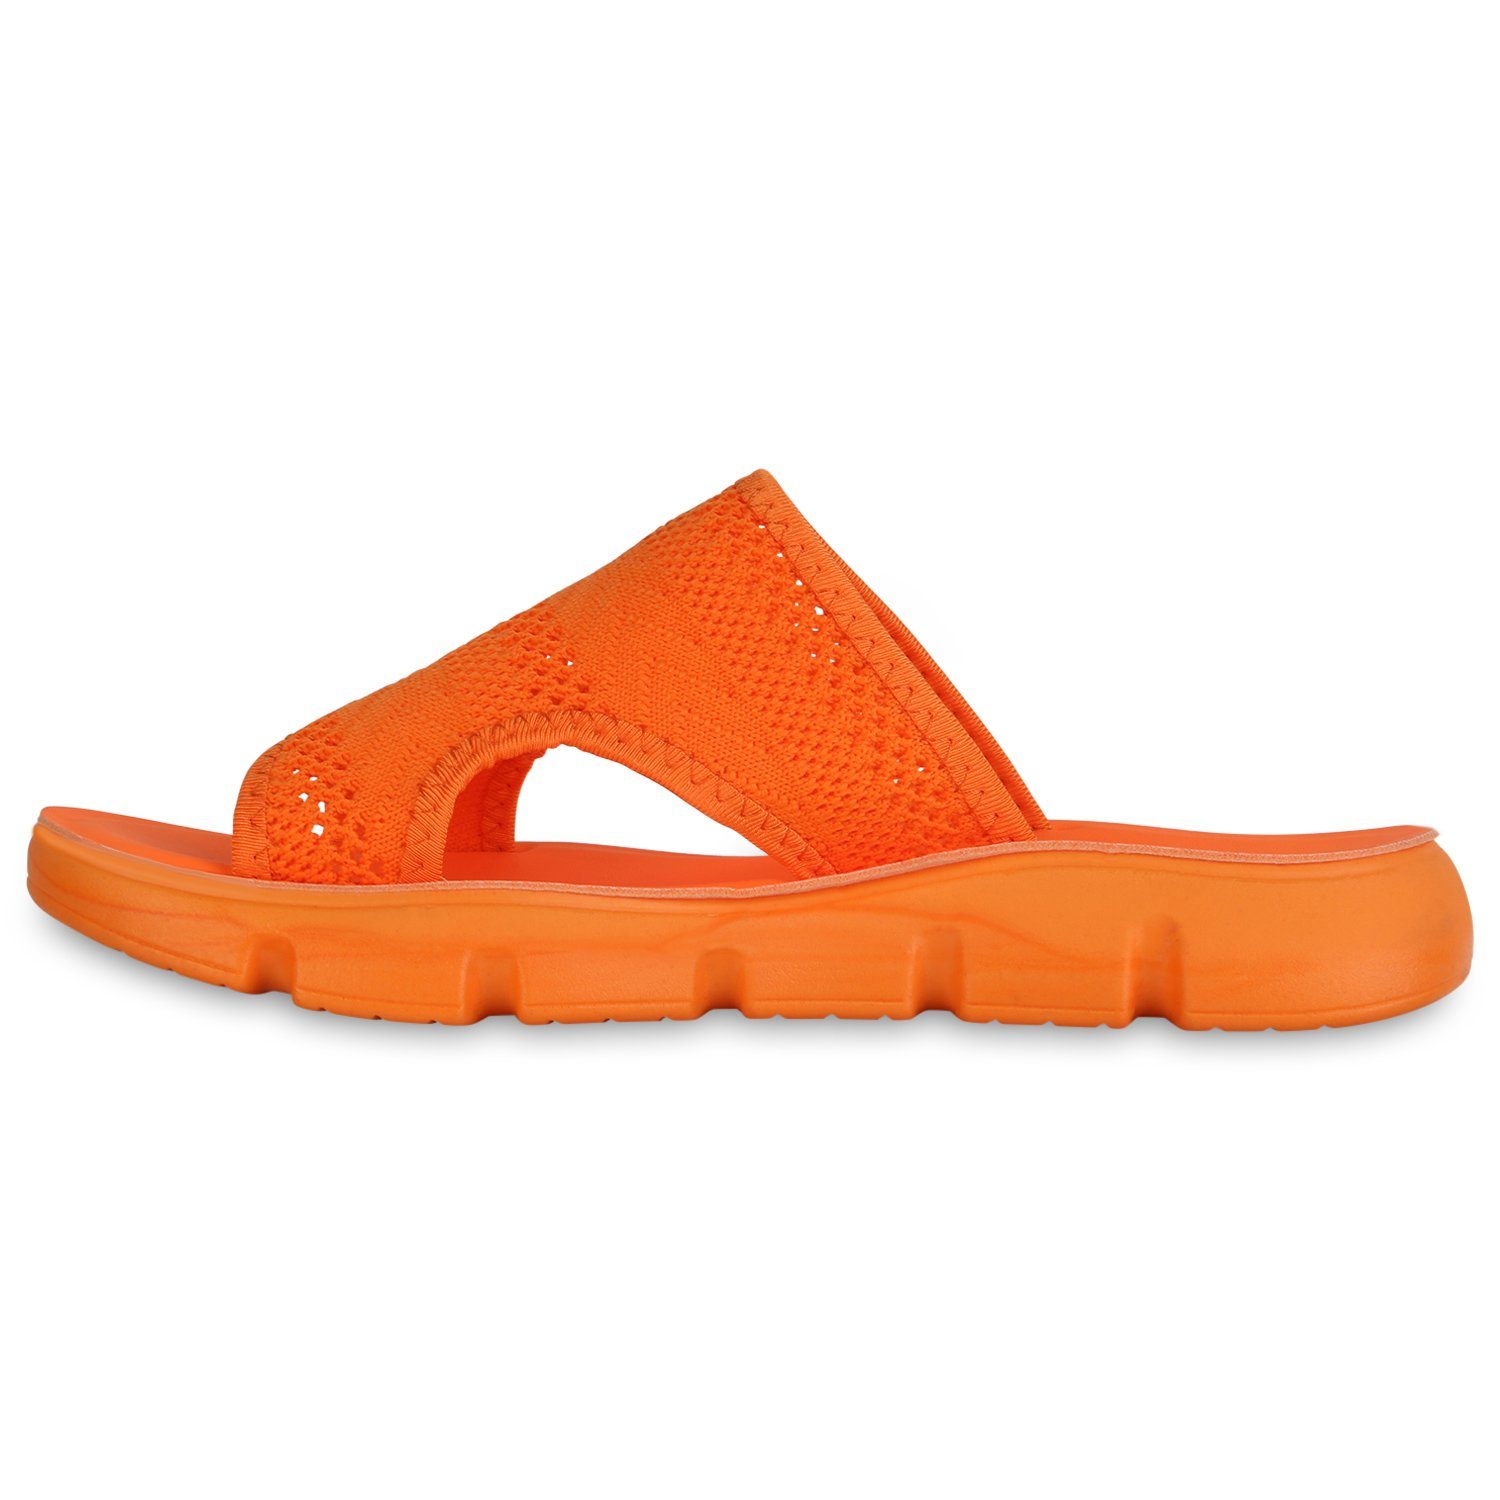 VAN HILL 840455 Pantolette Schuhe Neon Orange